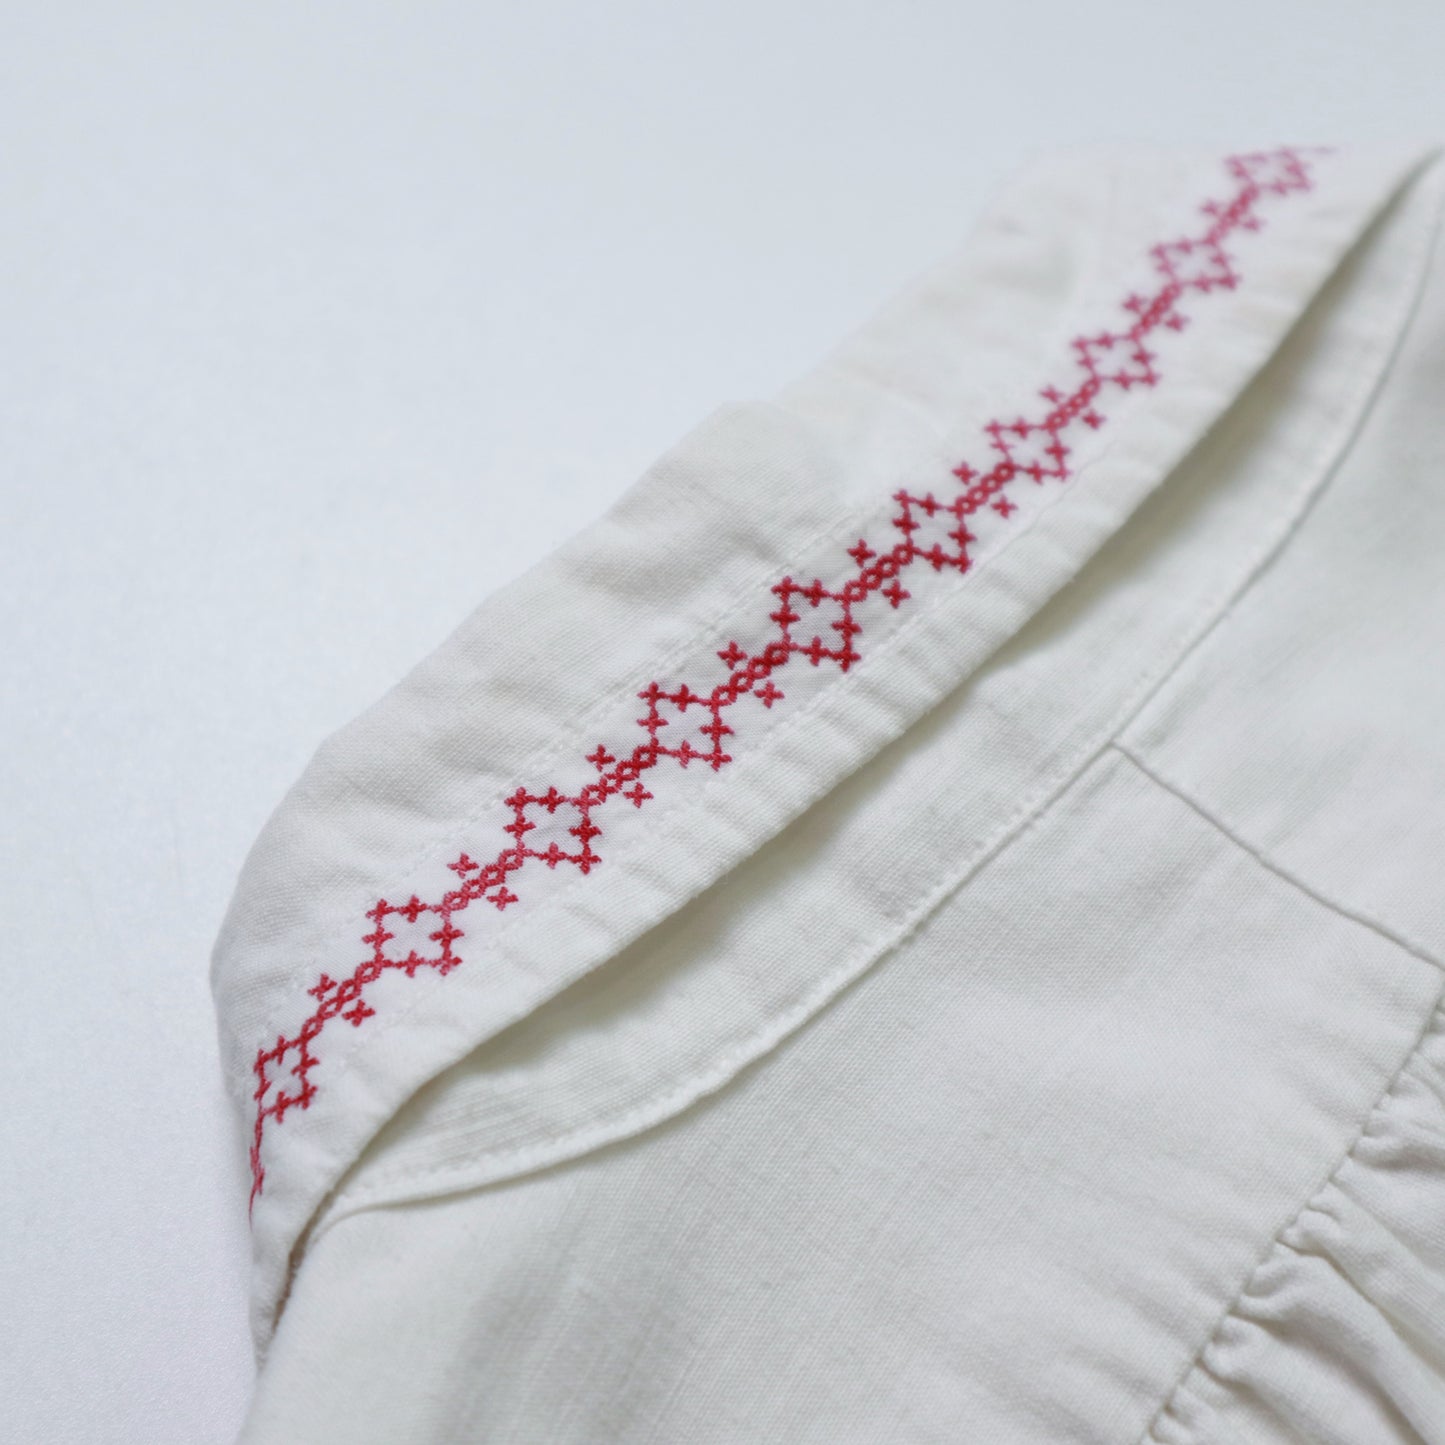 1960年代 アンティーク フレンチ ナイトシャツ フランス刺繍入りパジャマシャツ